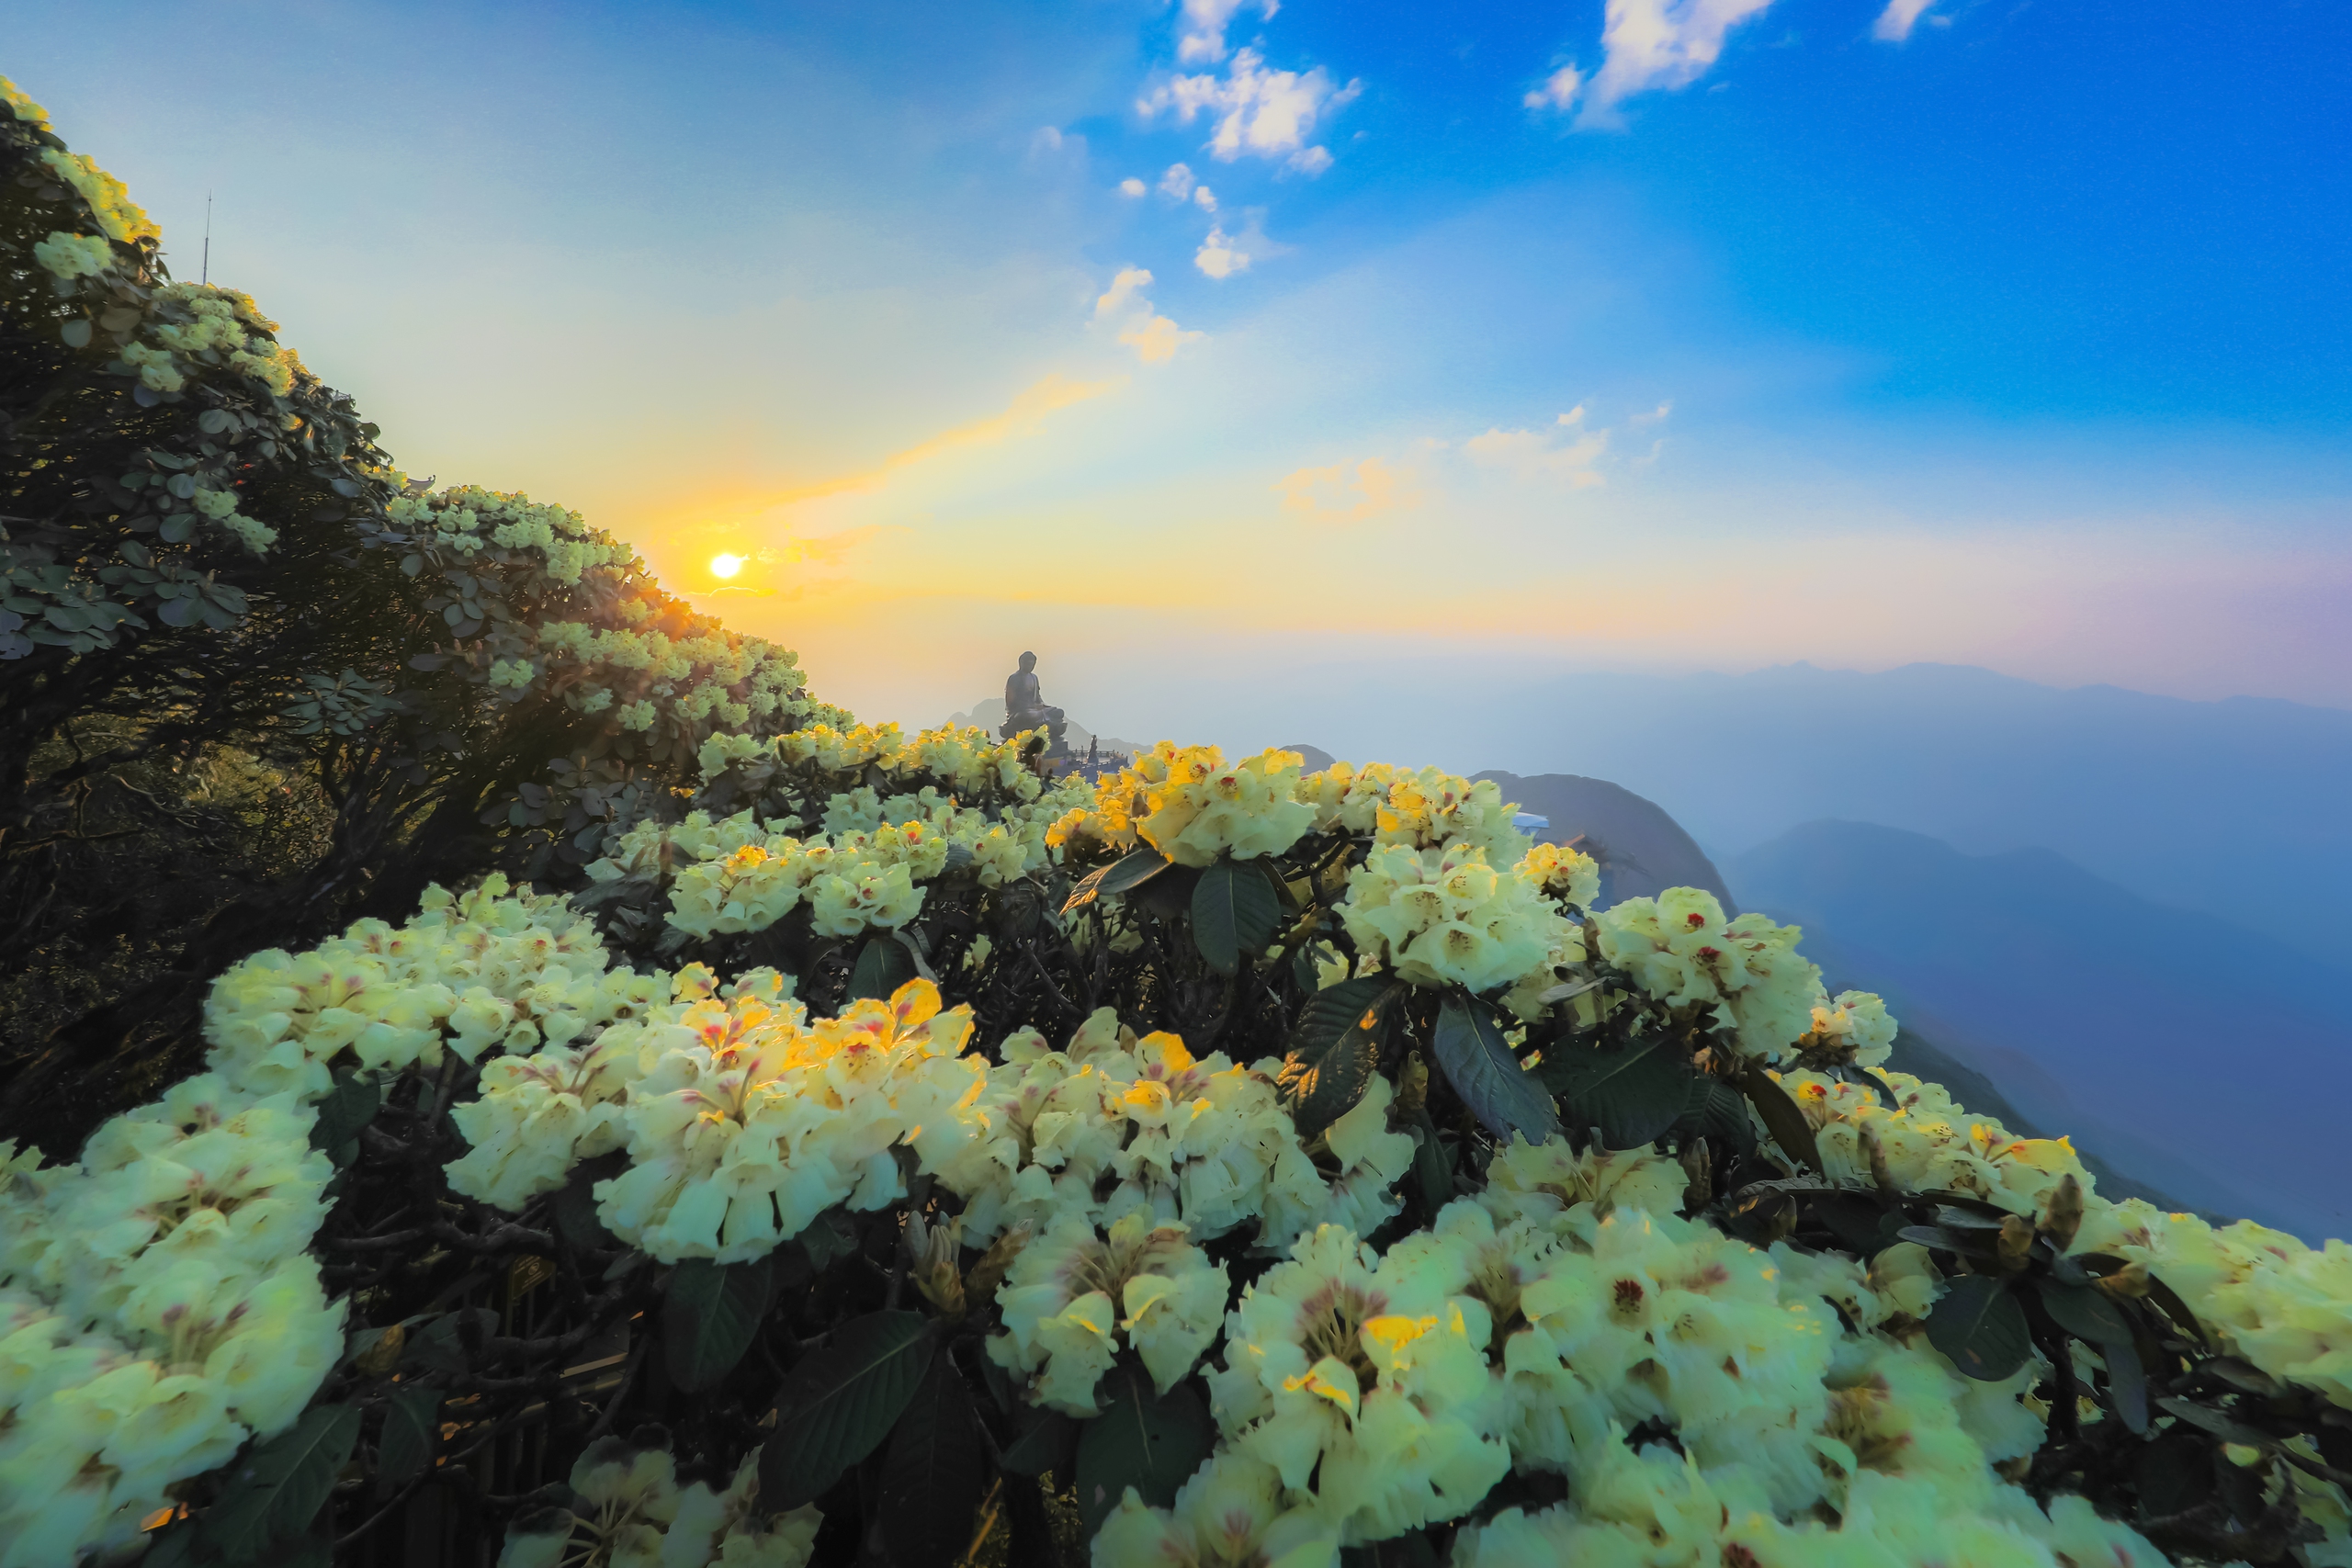 Những du khách không kịp đến Fansipan vào buổi sáng có thể lưu giữ khoảnh khắc thiên nhiên tuyệt đẹp trong ánh hoàng hôn, khi hoa đỗ quyên rực rỡ tựa như những tia lửa đầy sức sống trước khi mặt trời dần xuống phía xa chân trời